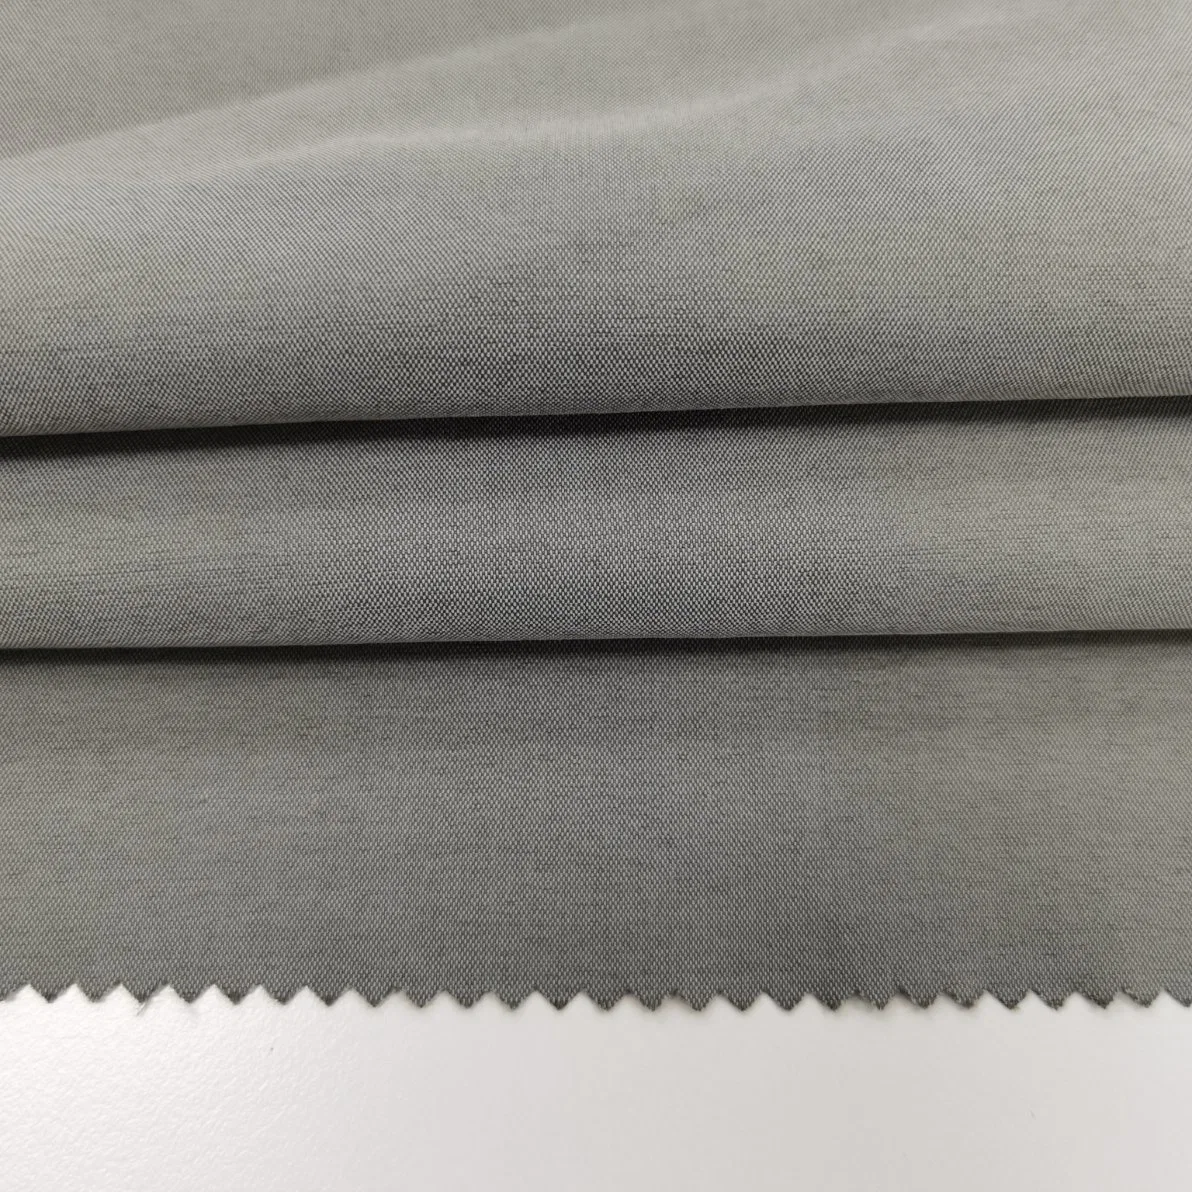 China Lieferant Nylon Polyester Kation T800 Weft elastische stumpf Poly Stoff funktionelles atmungsaktives Gewebe für Sportswear